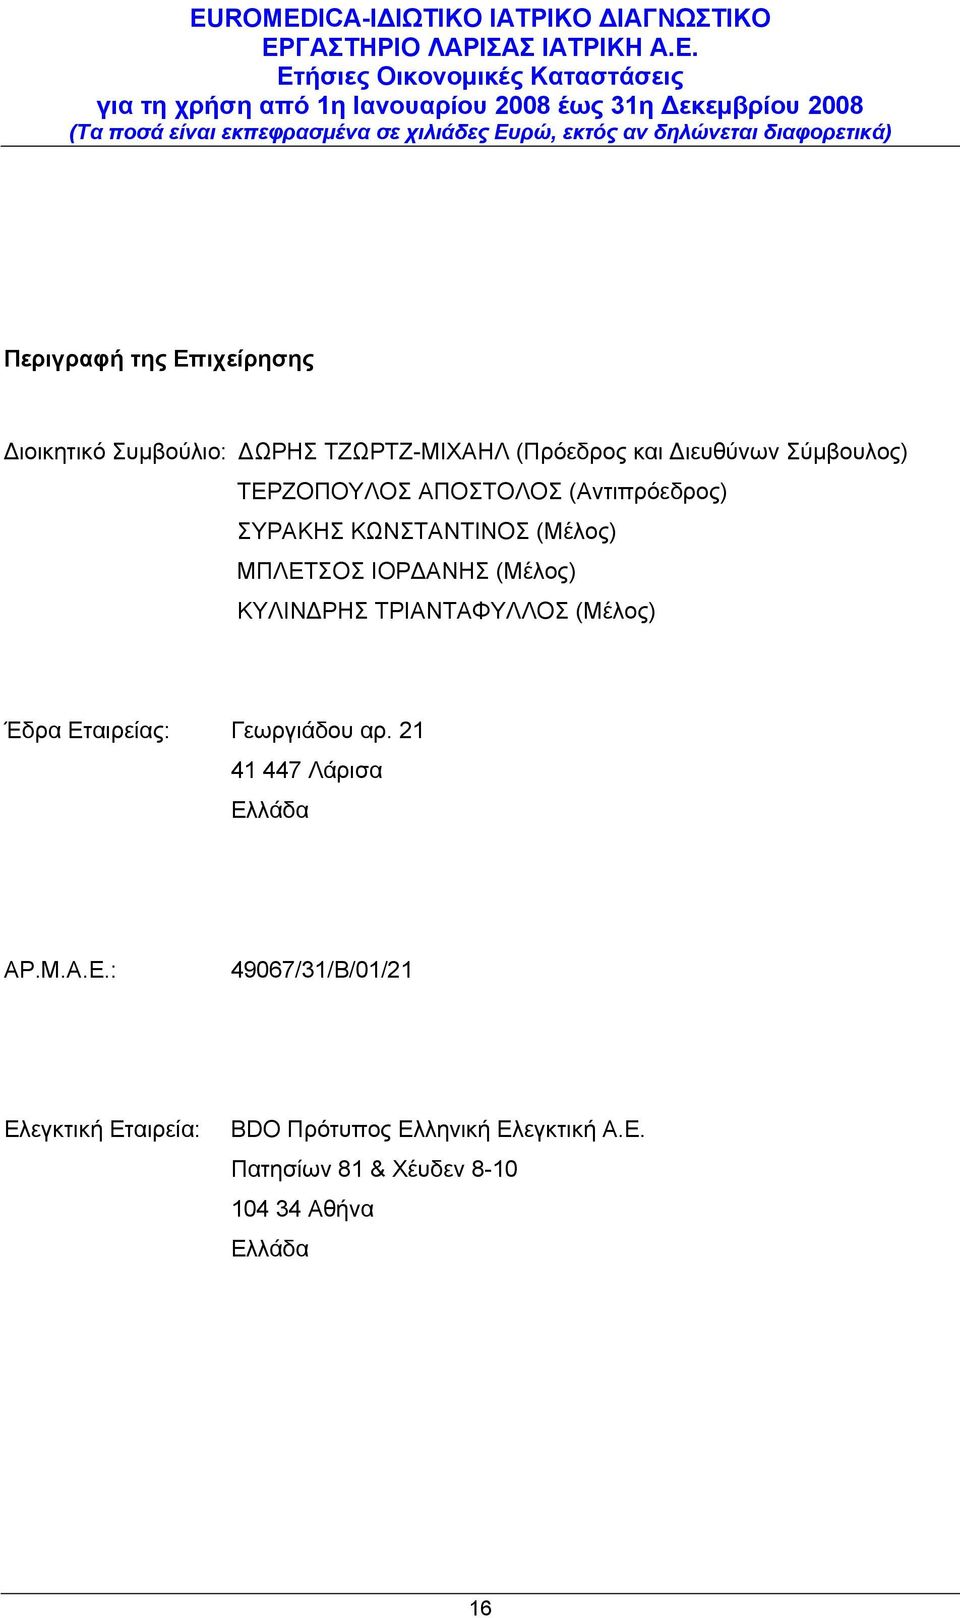 ΤΡΙΑΝΤΑΦΥΛΛΟΣ (Μέλος) Έδρα Εταιρείας: Γεωργιάδου αρ. 21 41 447 Λάρισα Ελλάδα ΑΡ.Μ.Α.Ε.: 49067/31/Β/01/21 Ελεγκτική Εταιρεία: BDO Πρότυπος Ελληνική Ελεγκτική Α.